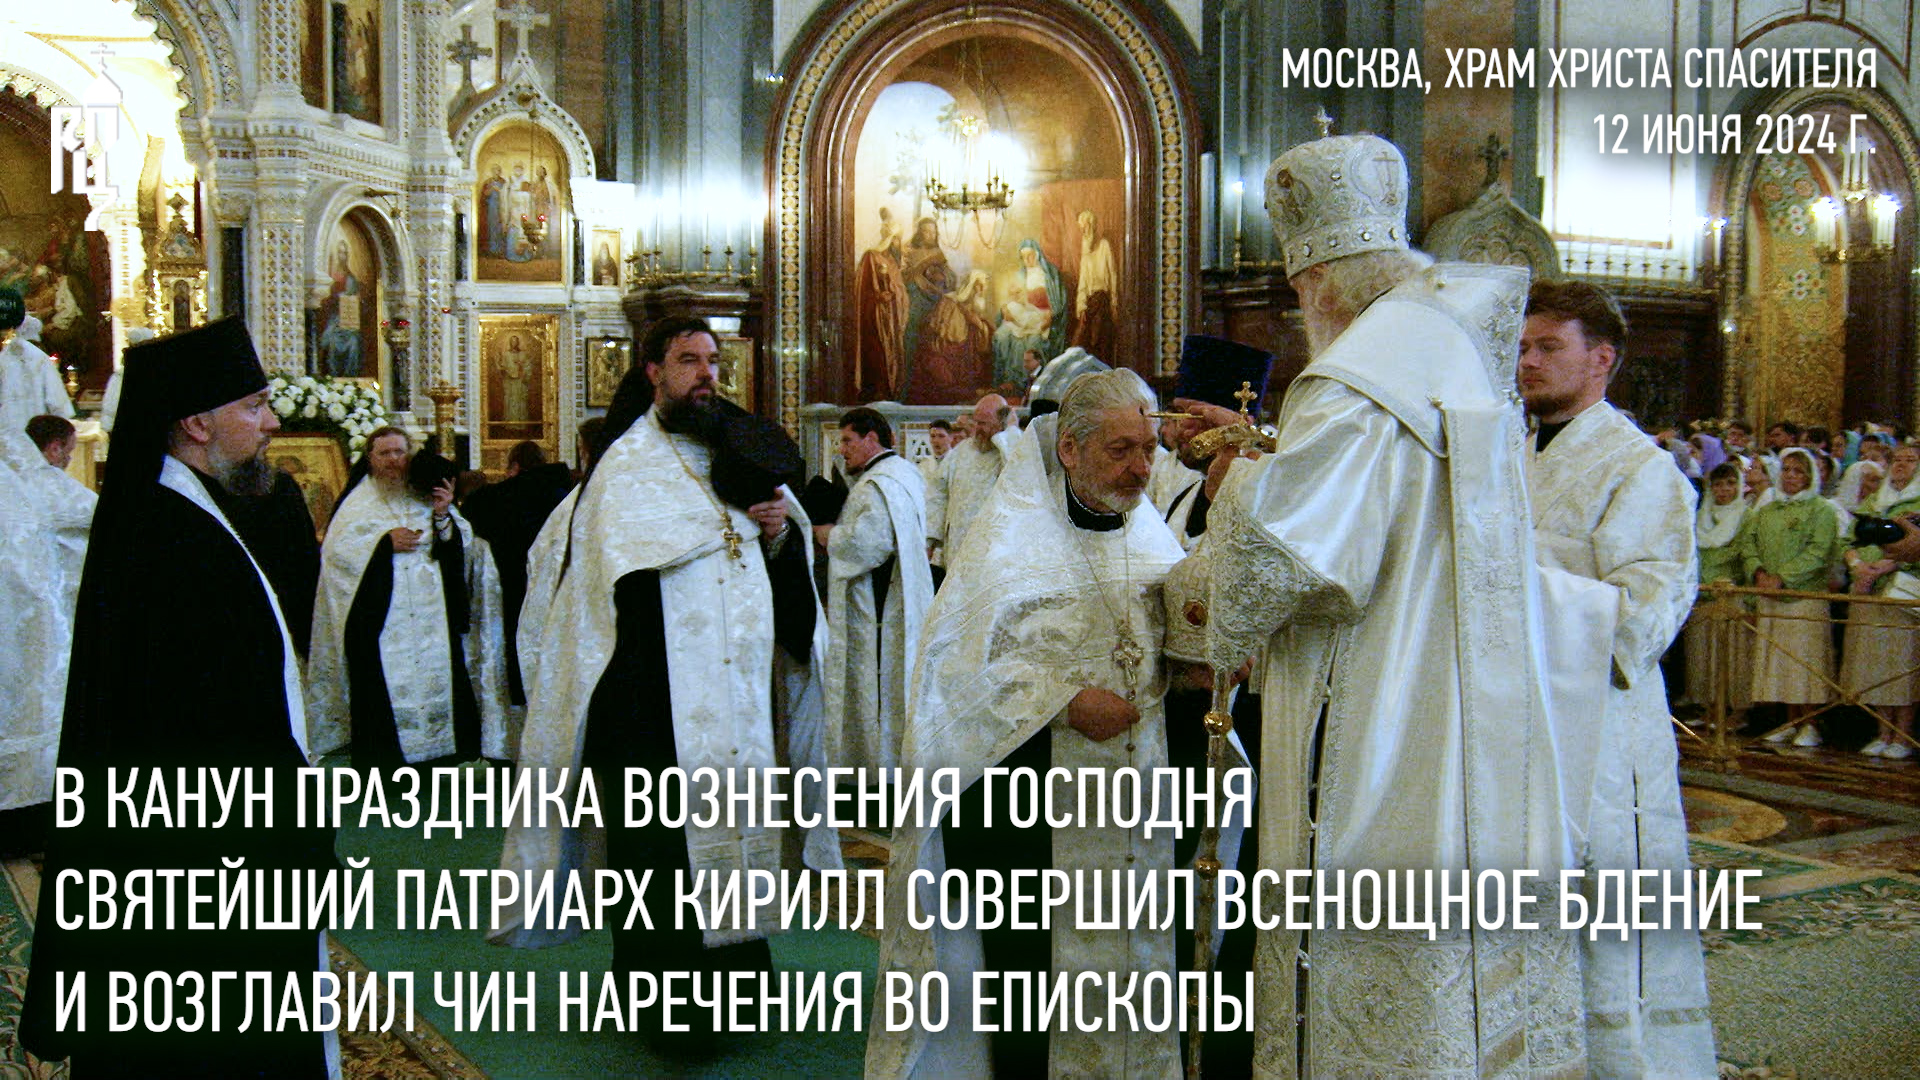 Святейший Патриарх Кирилл совершил всенощное бдение и возглавил чин наречения во епископы